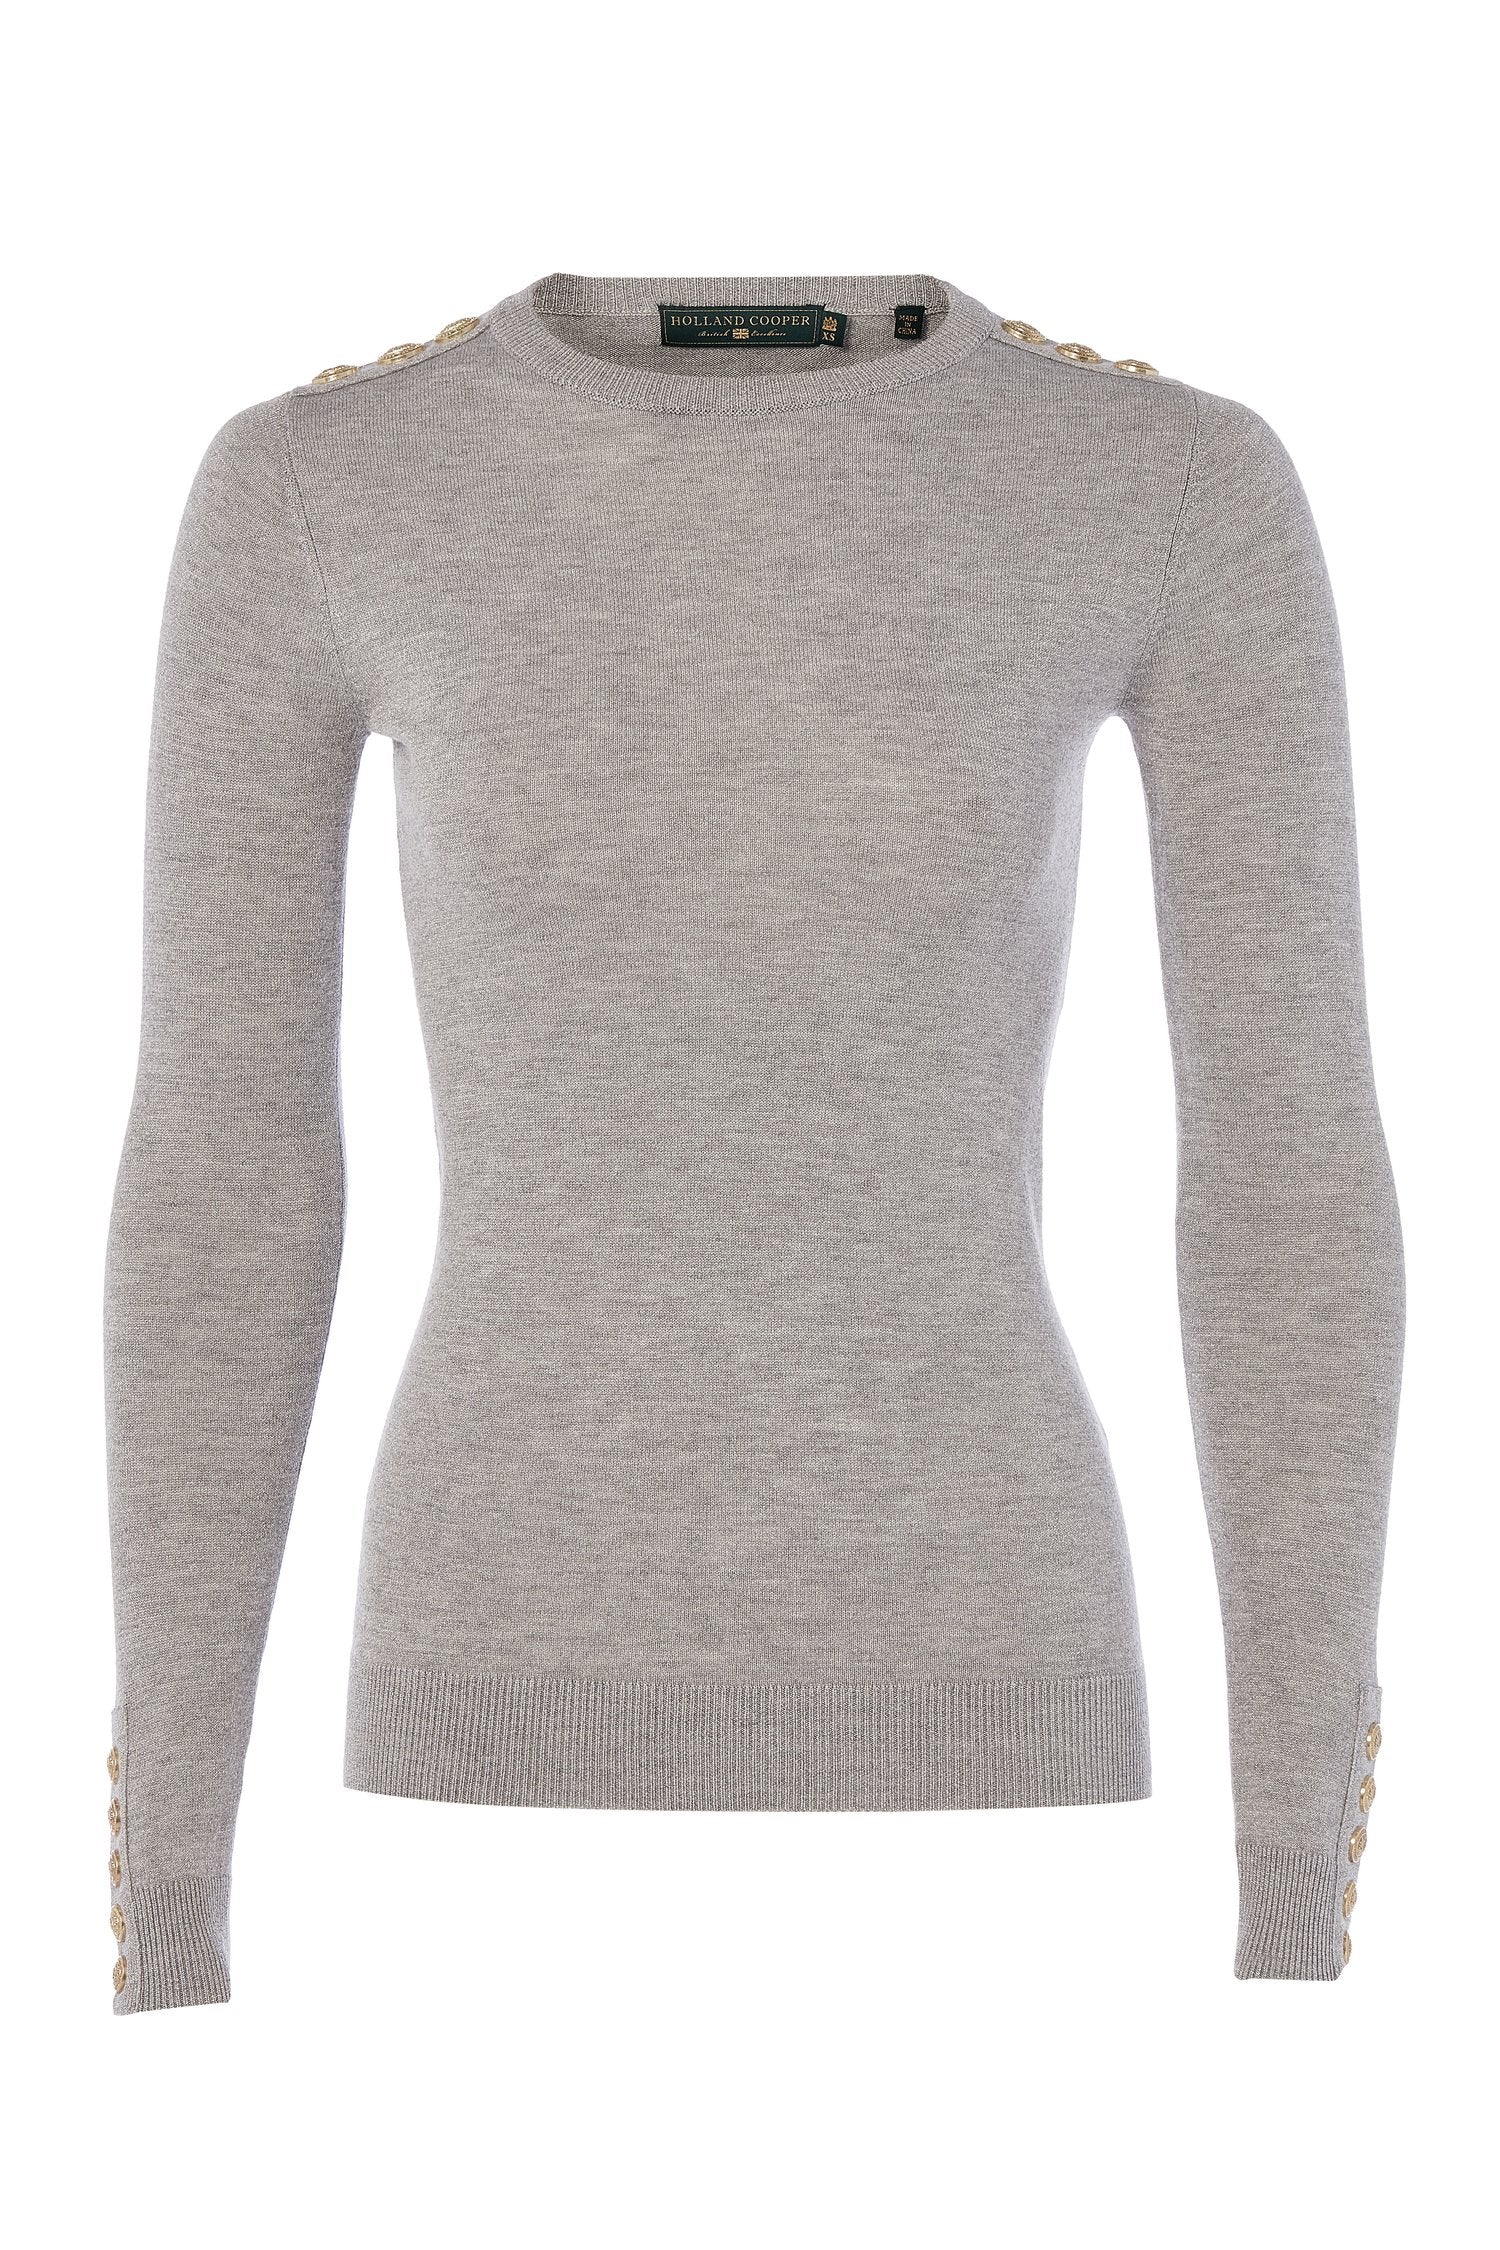 Holland Cooper Button Knit Metallic Crew Neck Sweater- Grey, Black, Pink, Beige